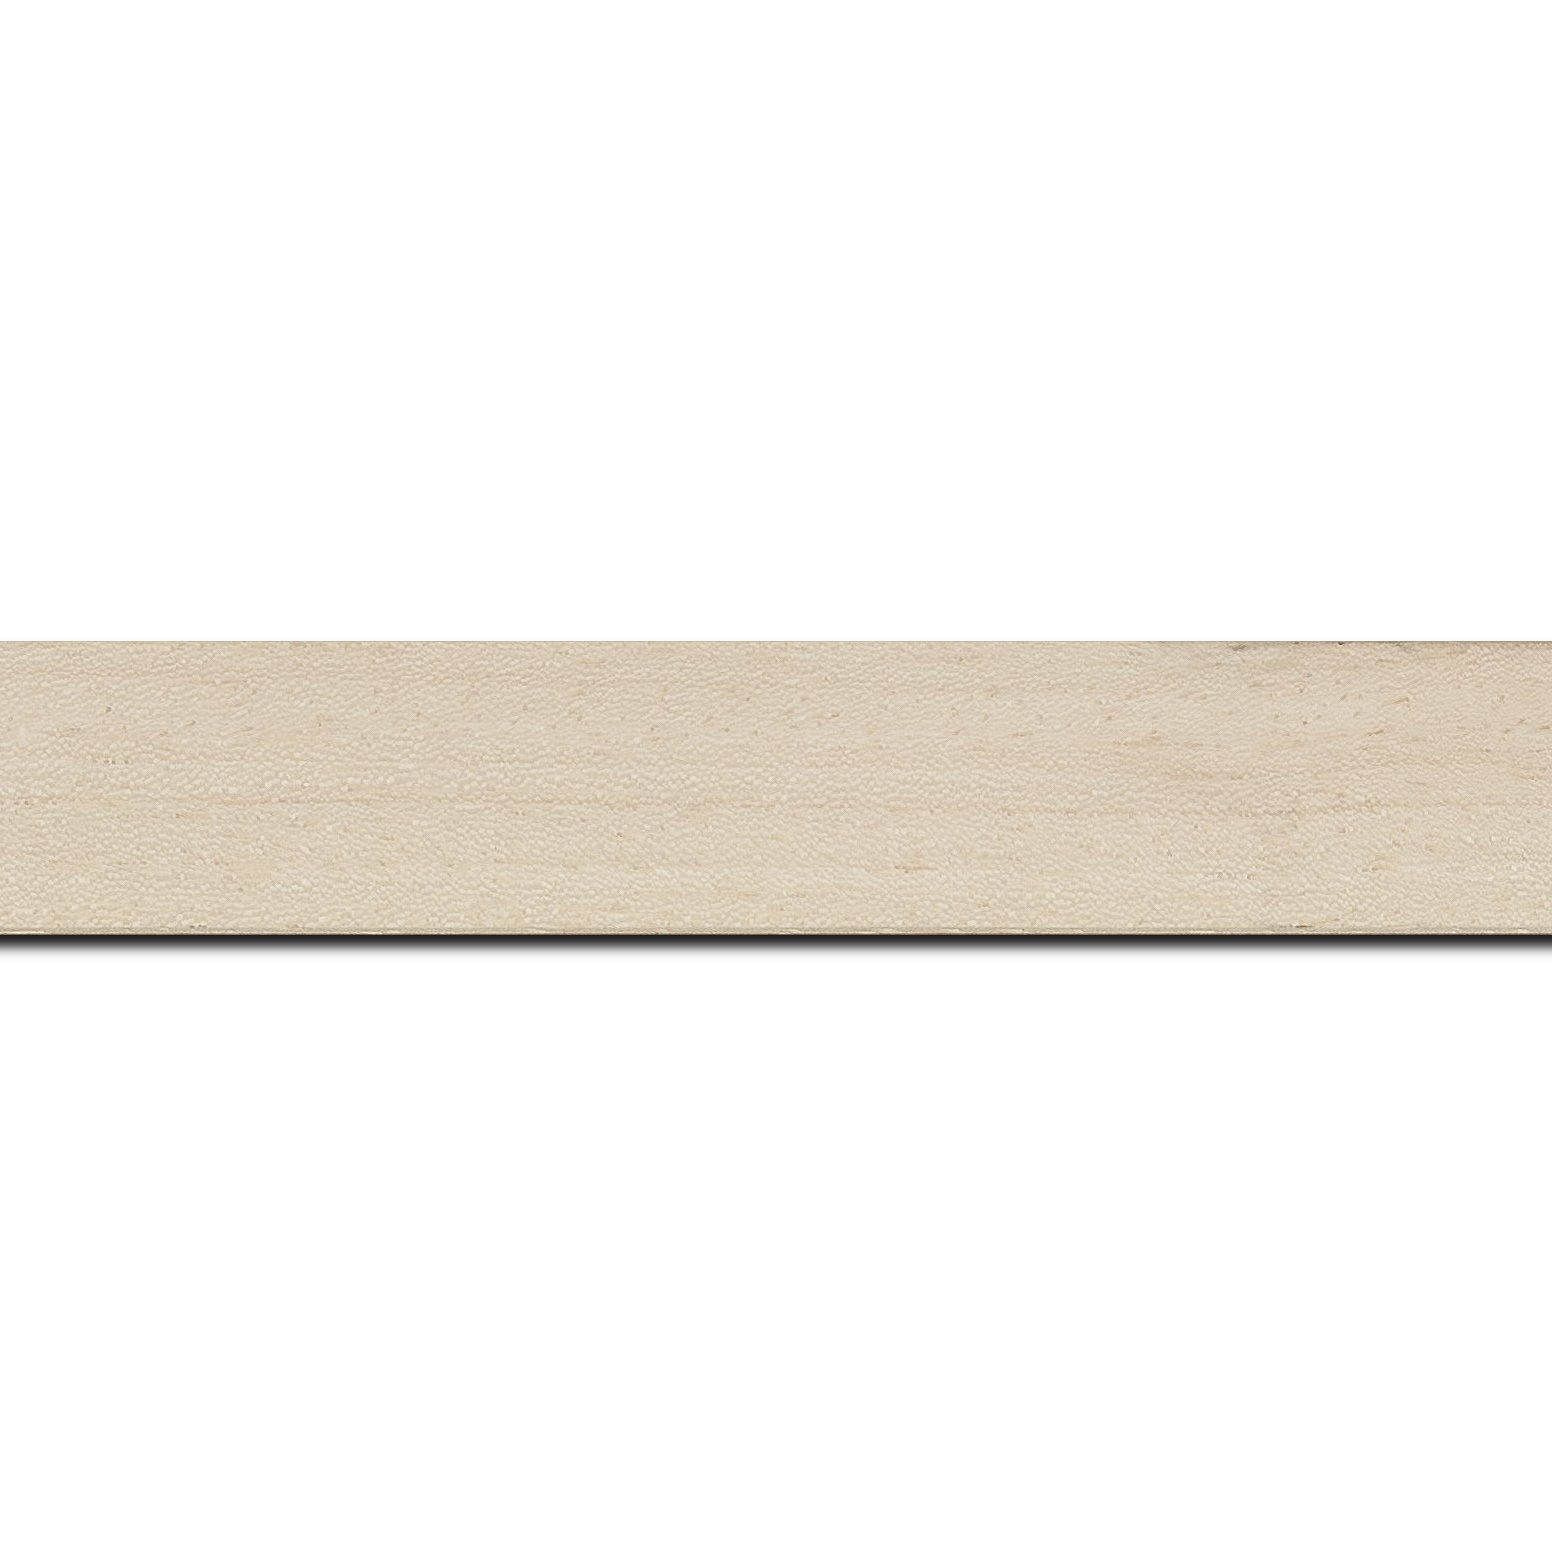 Baguette longueur 1.40m bois profil plat largeur 3cm ayous massif naturel (sans vernis, peut être peint...)effet cube (le sujet qui sera glissé dans le cadre sera en retrait de la face du cadre de 1.4cm assurant un effet très contemporain)